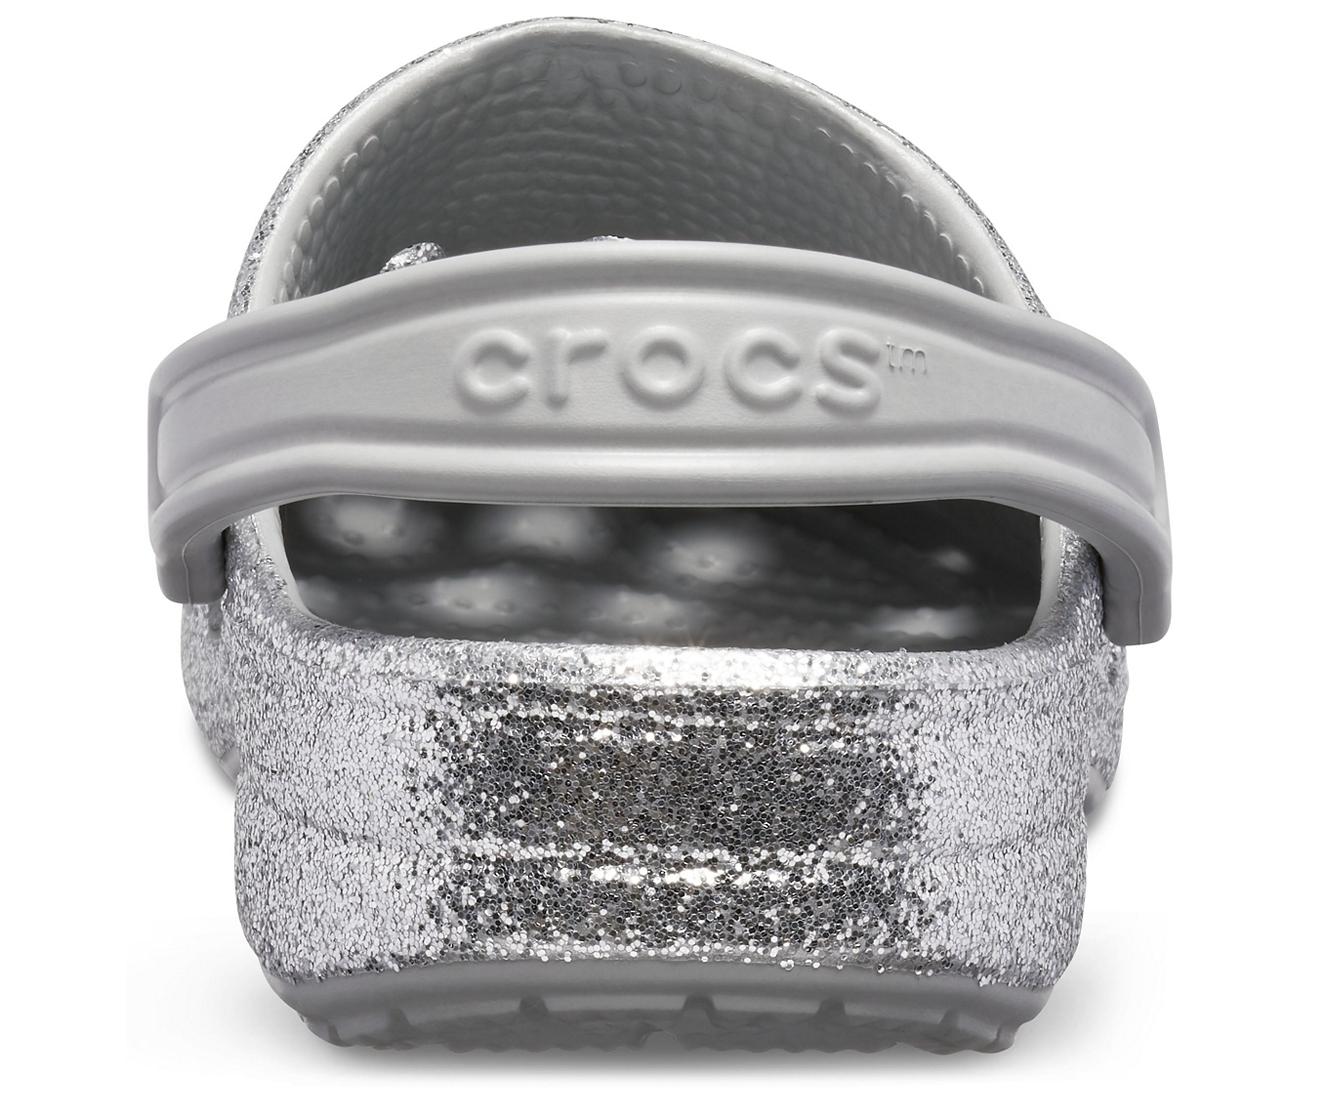 Crocs™ Silver Baya Glitter Clog in 